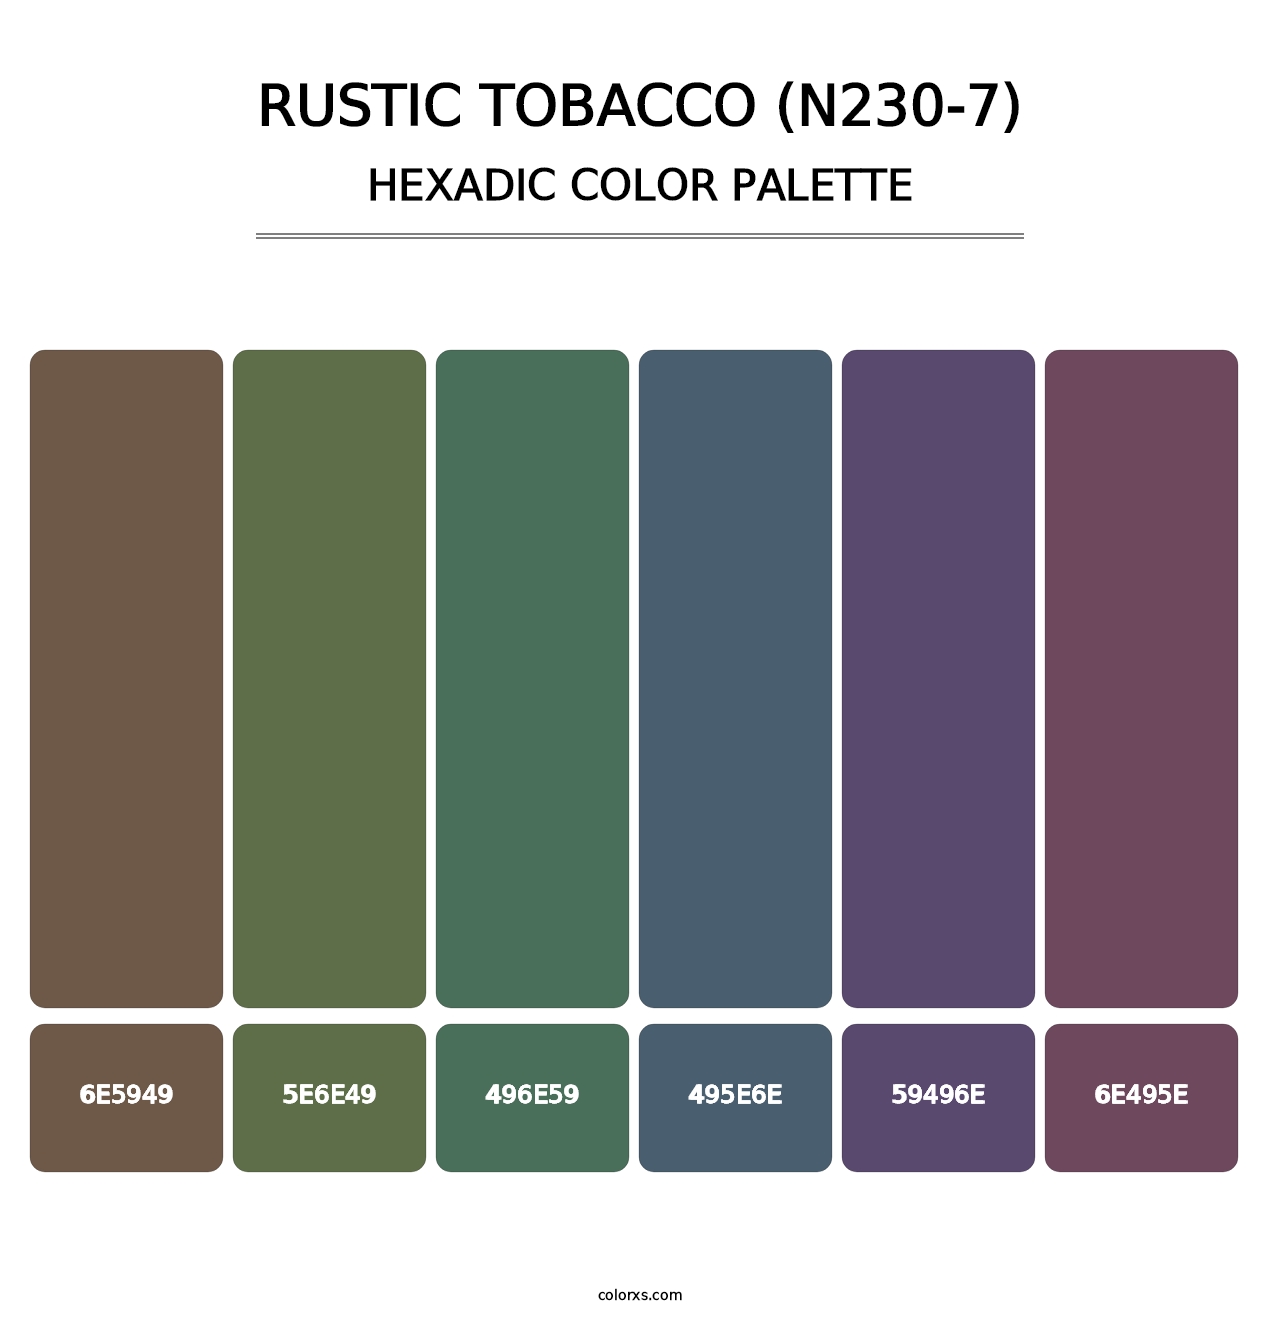 Rustic Tobacco (N230-7) - Hexadic Color Palette